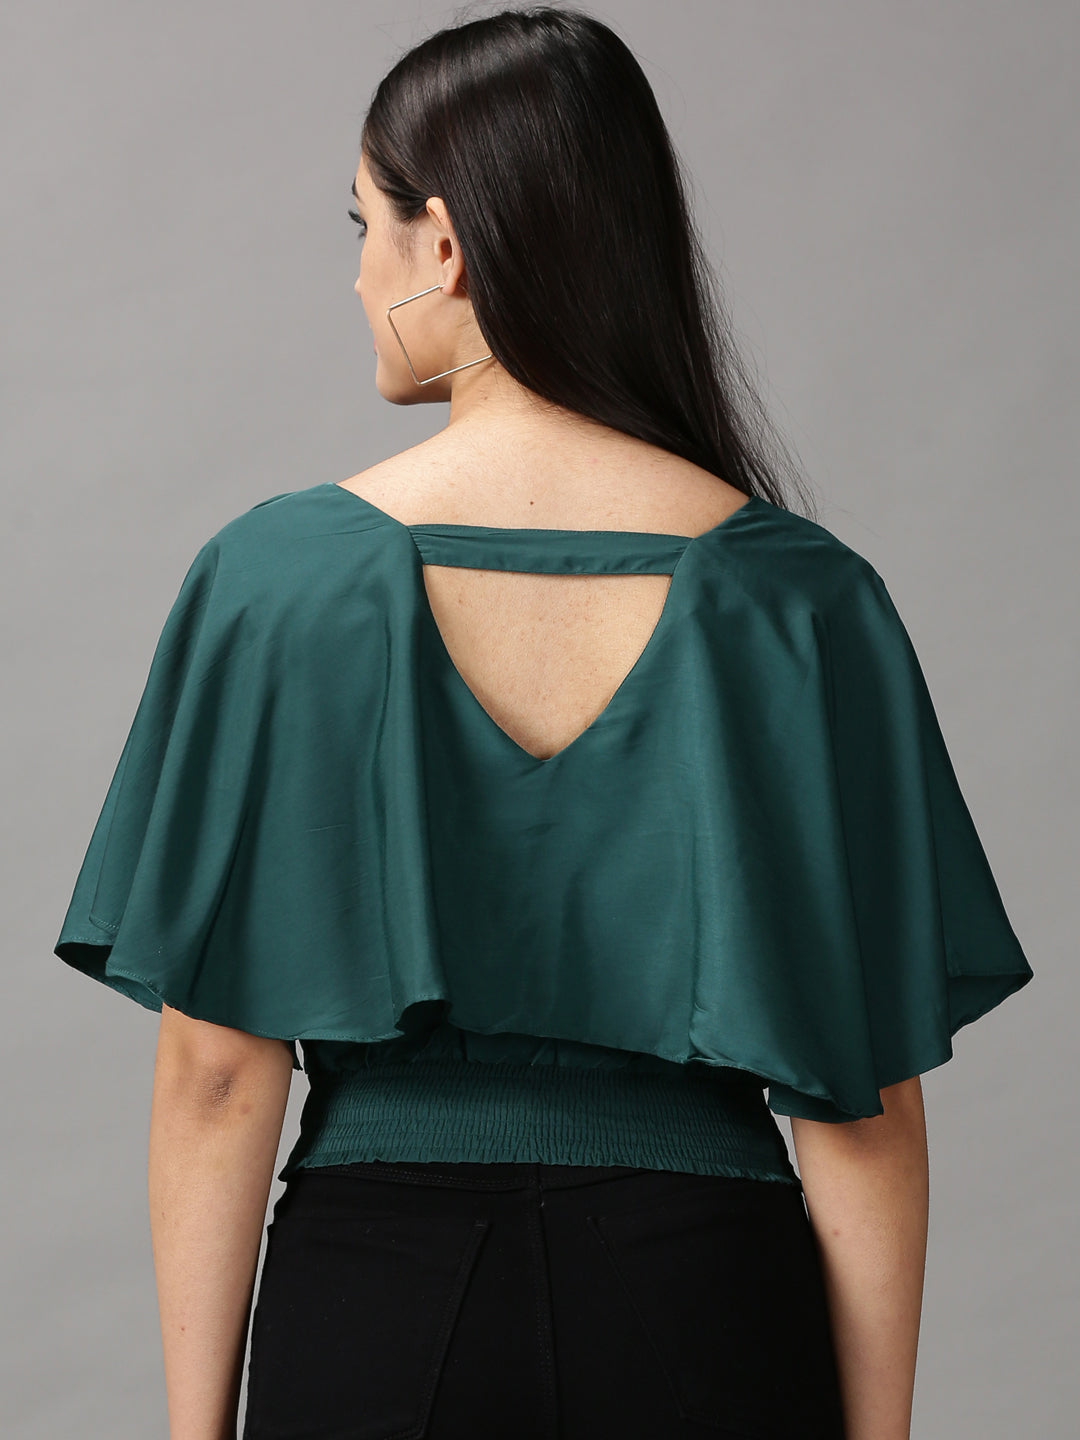 Women's Green Solid Cinched Waist Crop Top